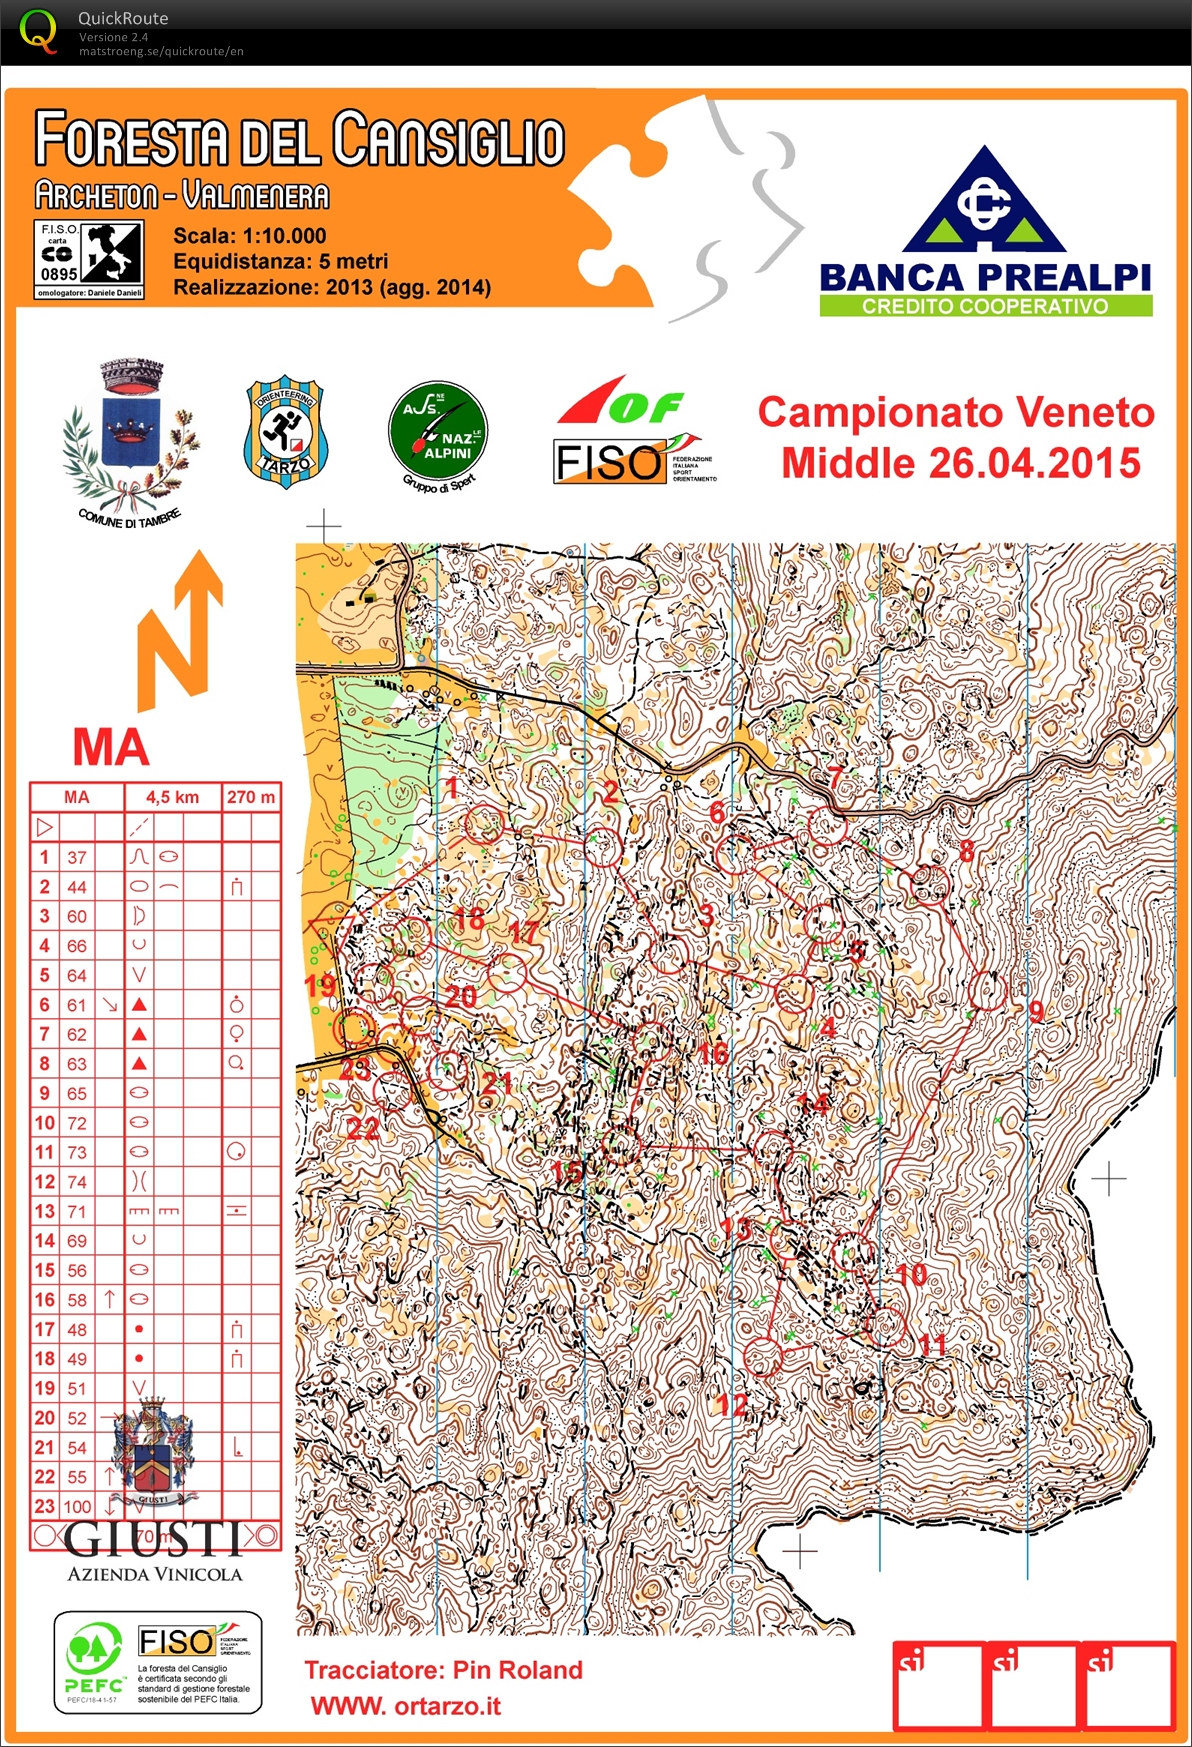 Campionato Veneto Middle 2015 (26.04.2015)